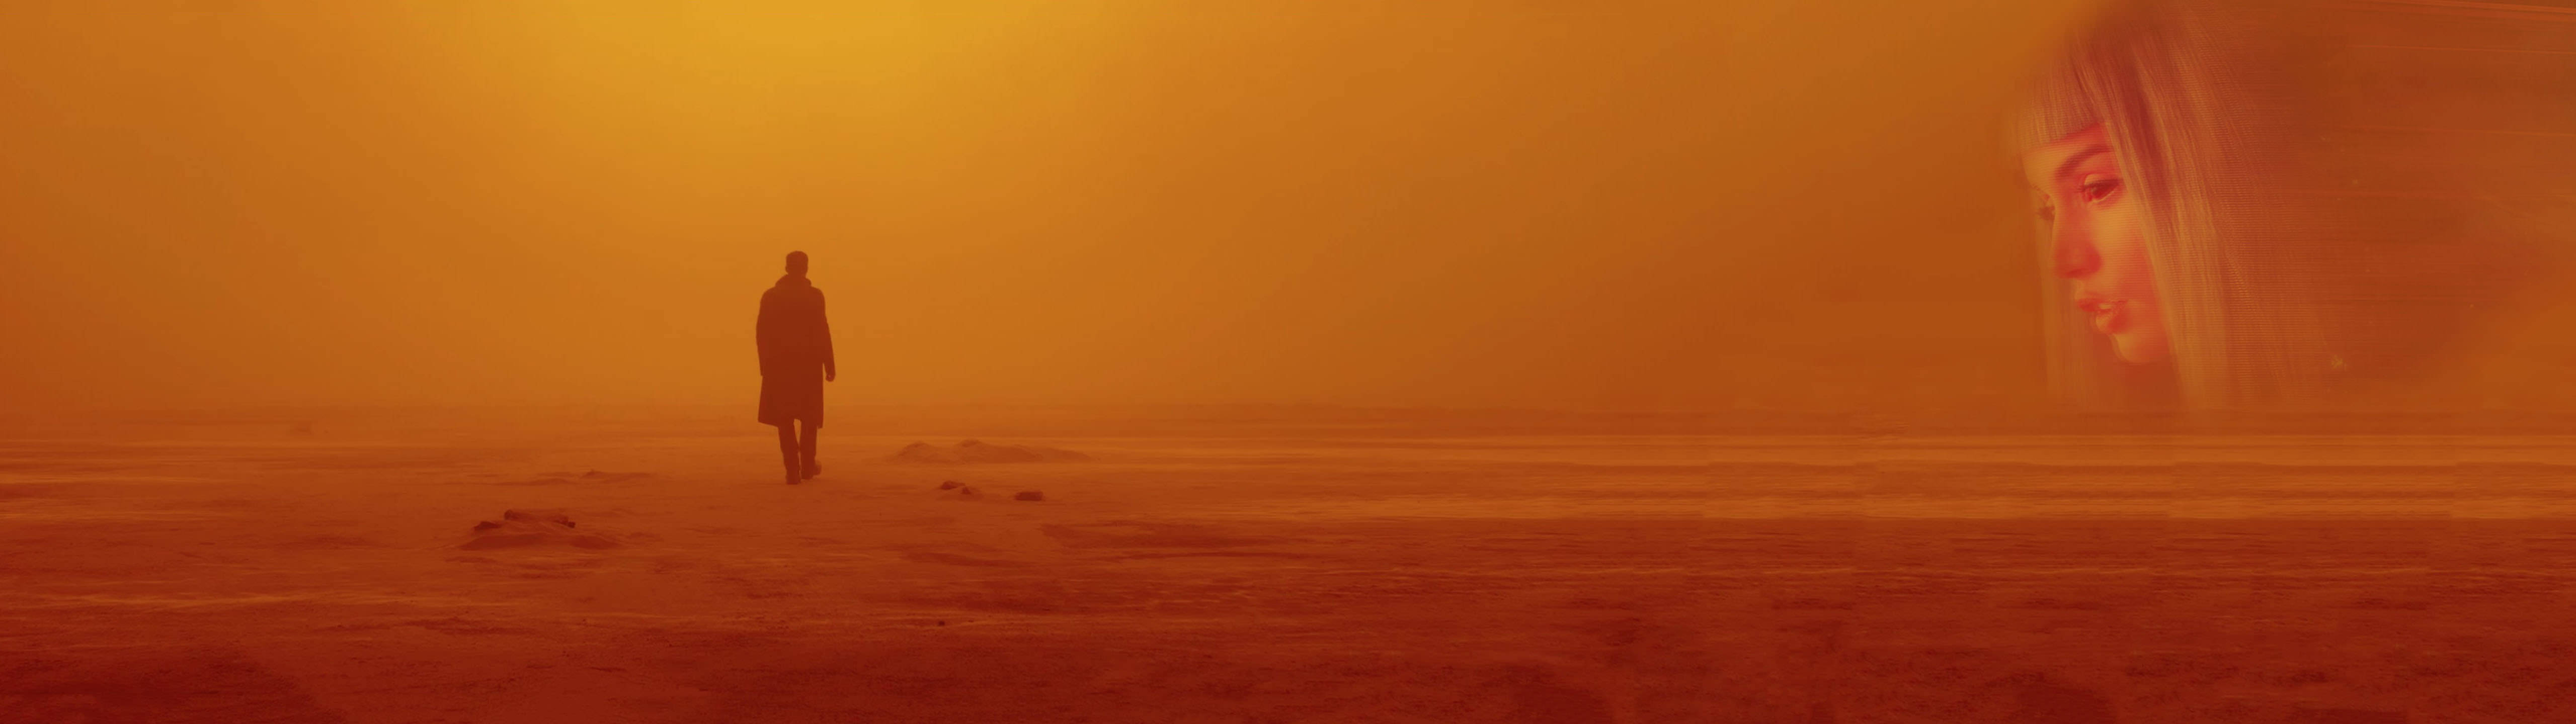 Blade Runner Desert Dual Monitor Background